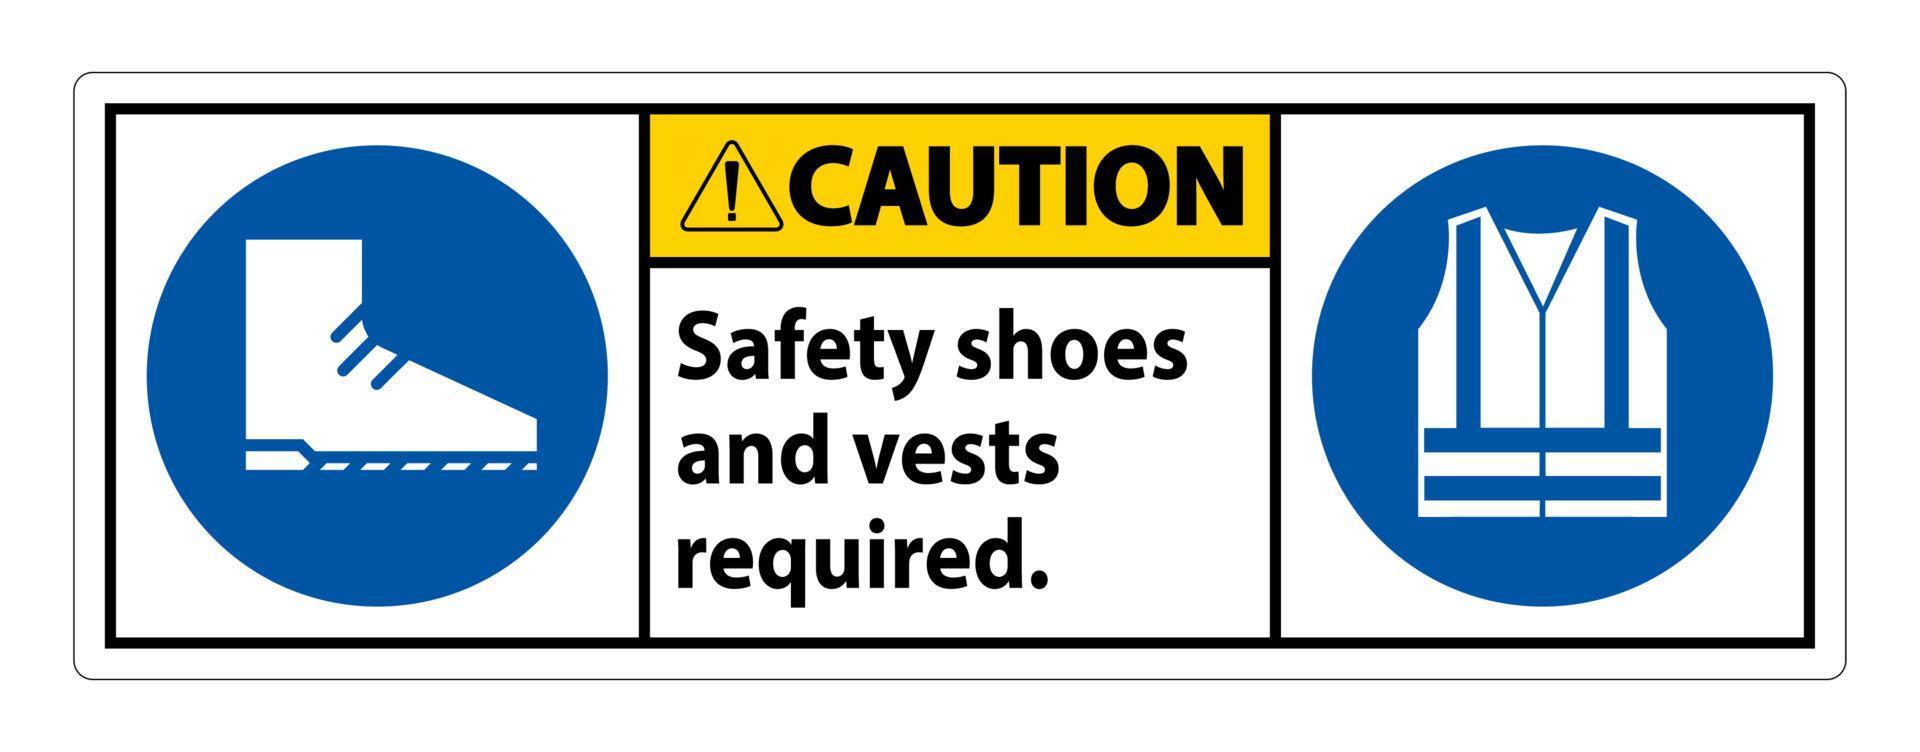 sinal de cautela, sapatos de segurança e colete necessários com os símbolos ppe em fundo branco vetor